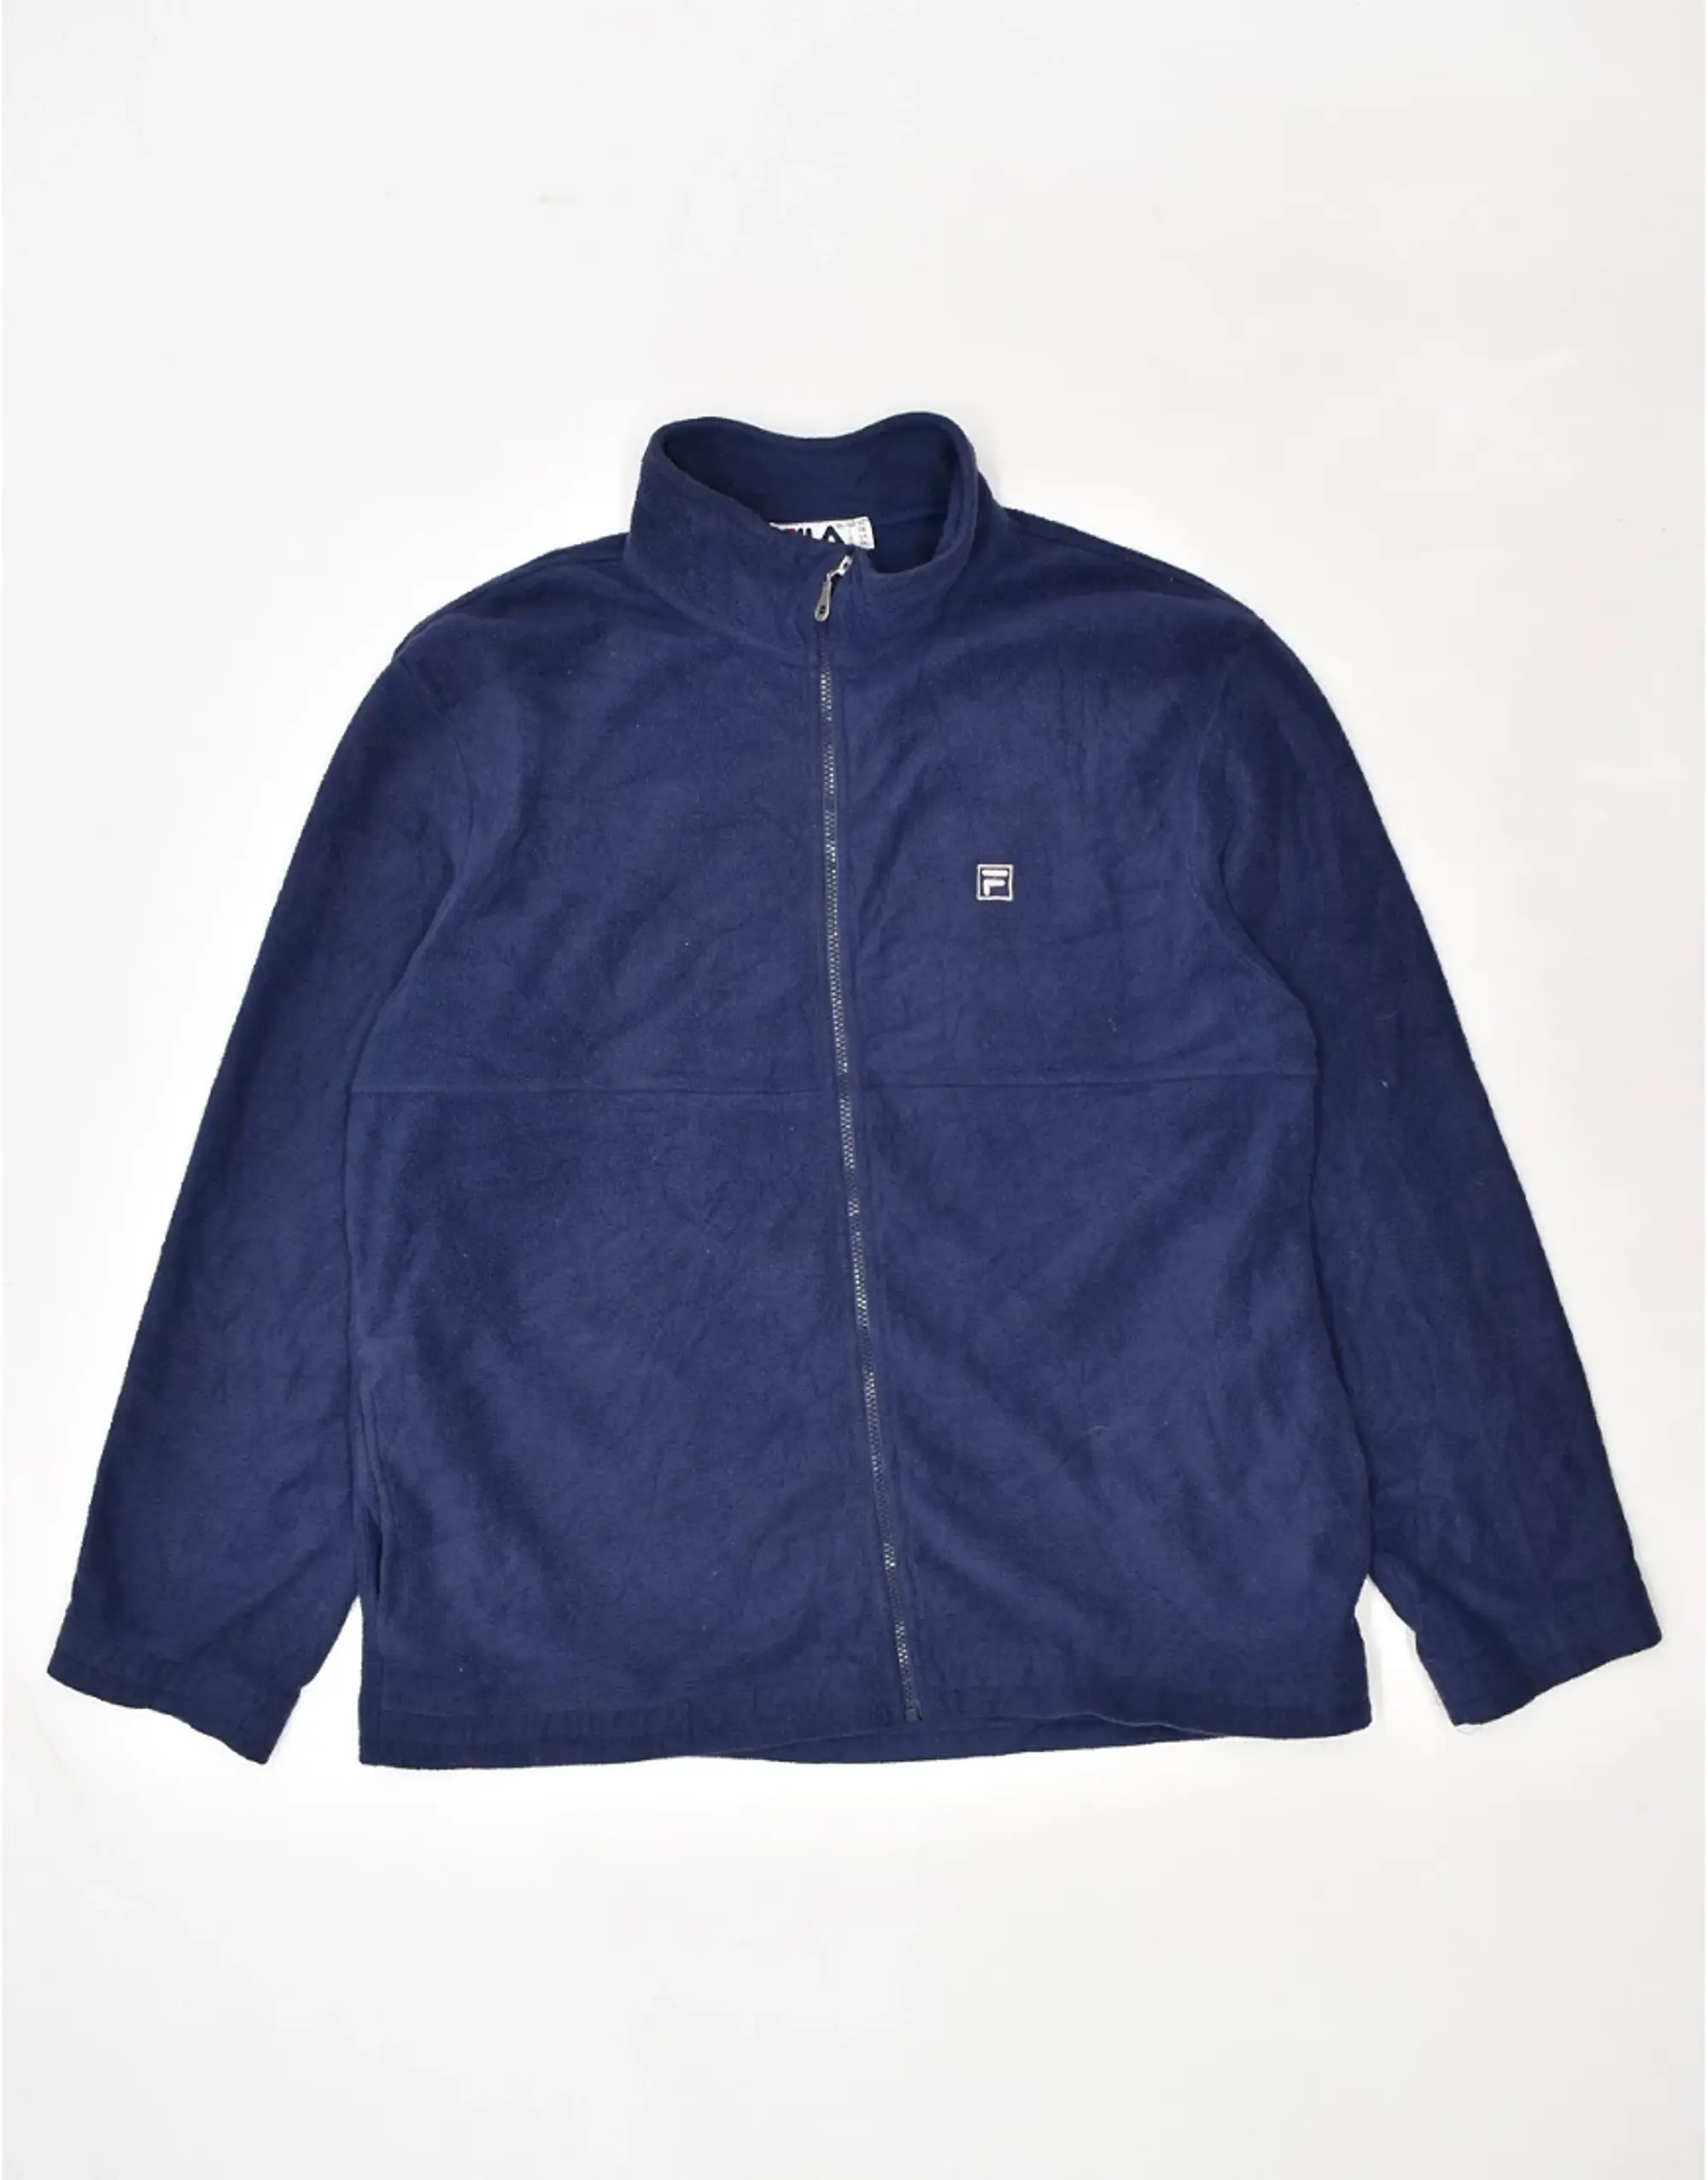 Vintage Fila Fleece Jacket In Navy Blue | JS070623-009 | FOOTY.COM